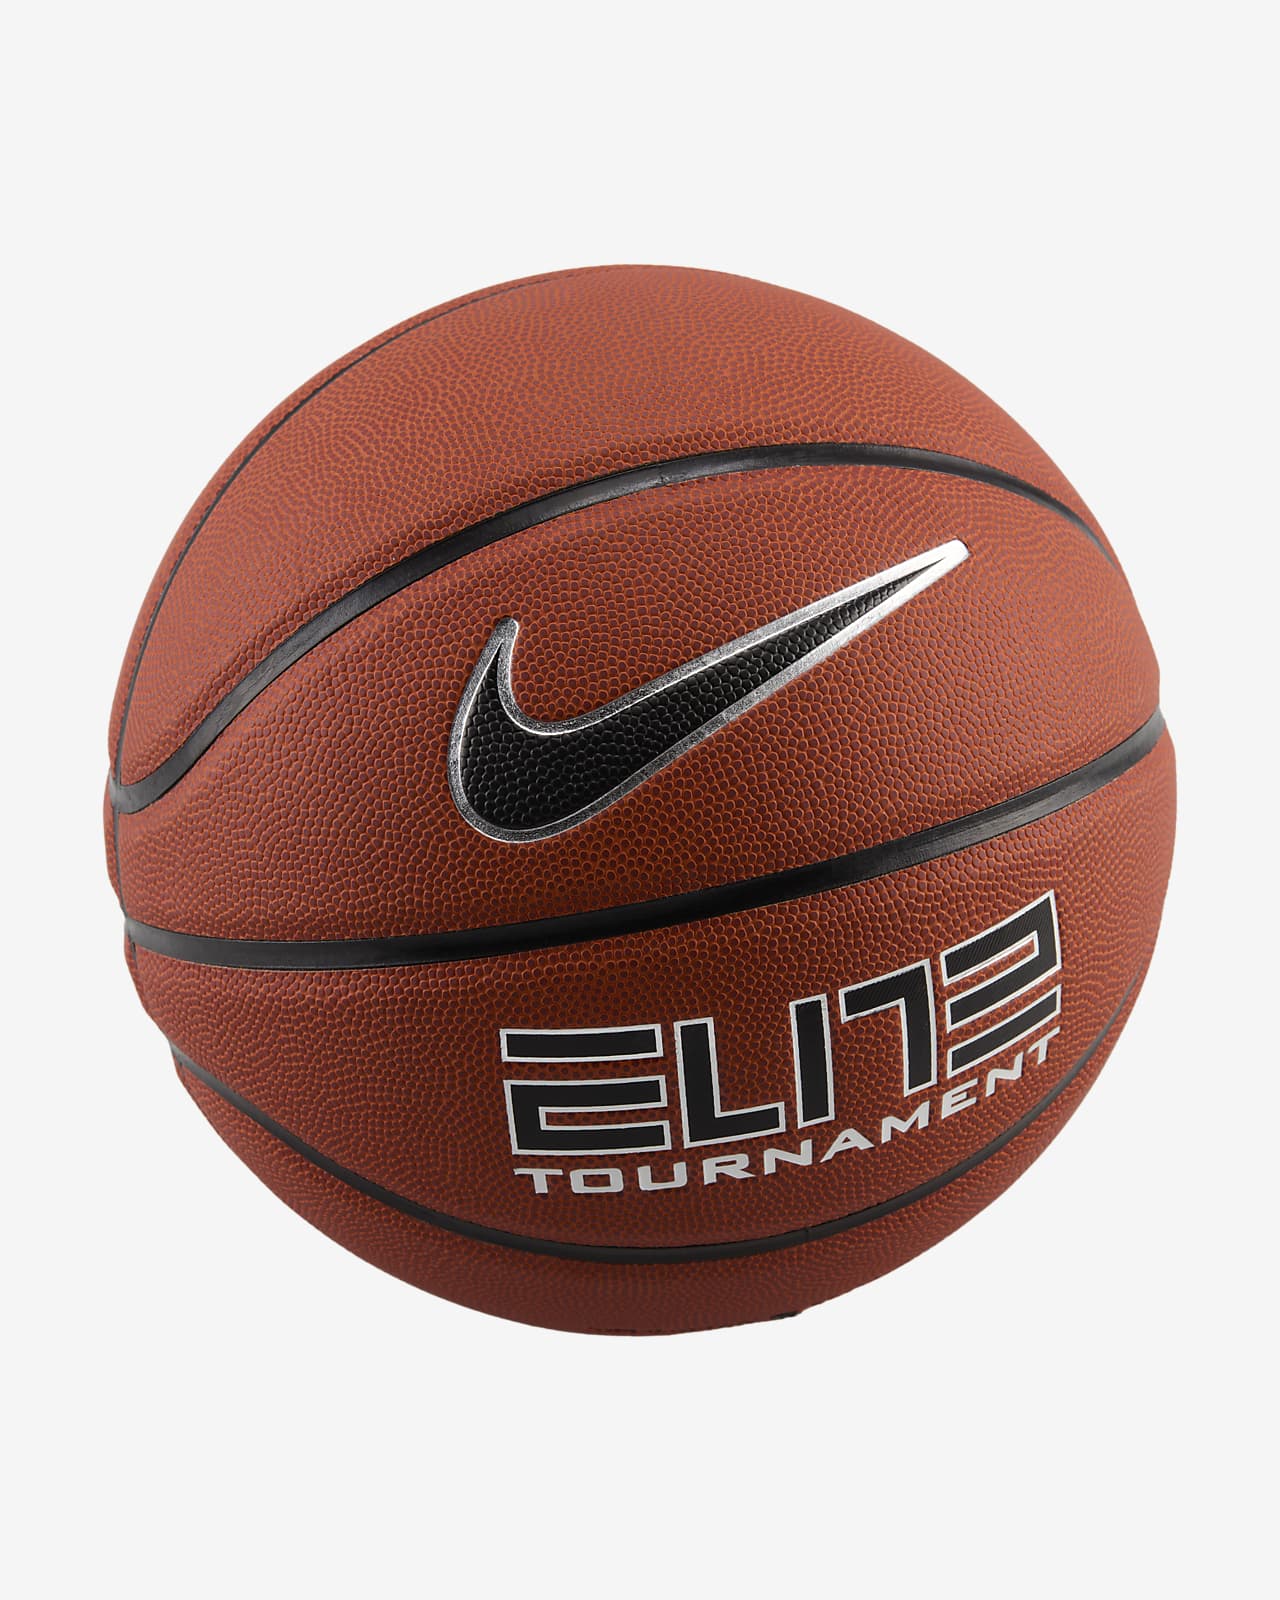 Nike Elite Tournament 8-Panel Basketball (Deflated)